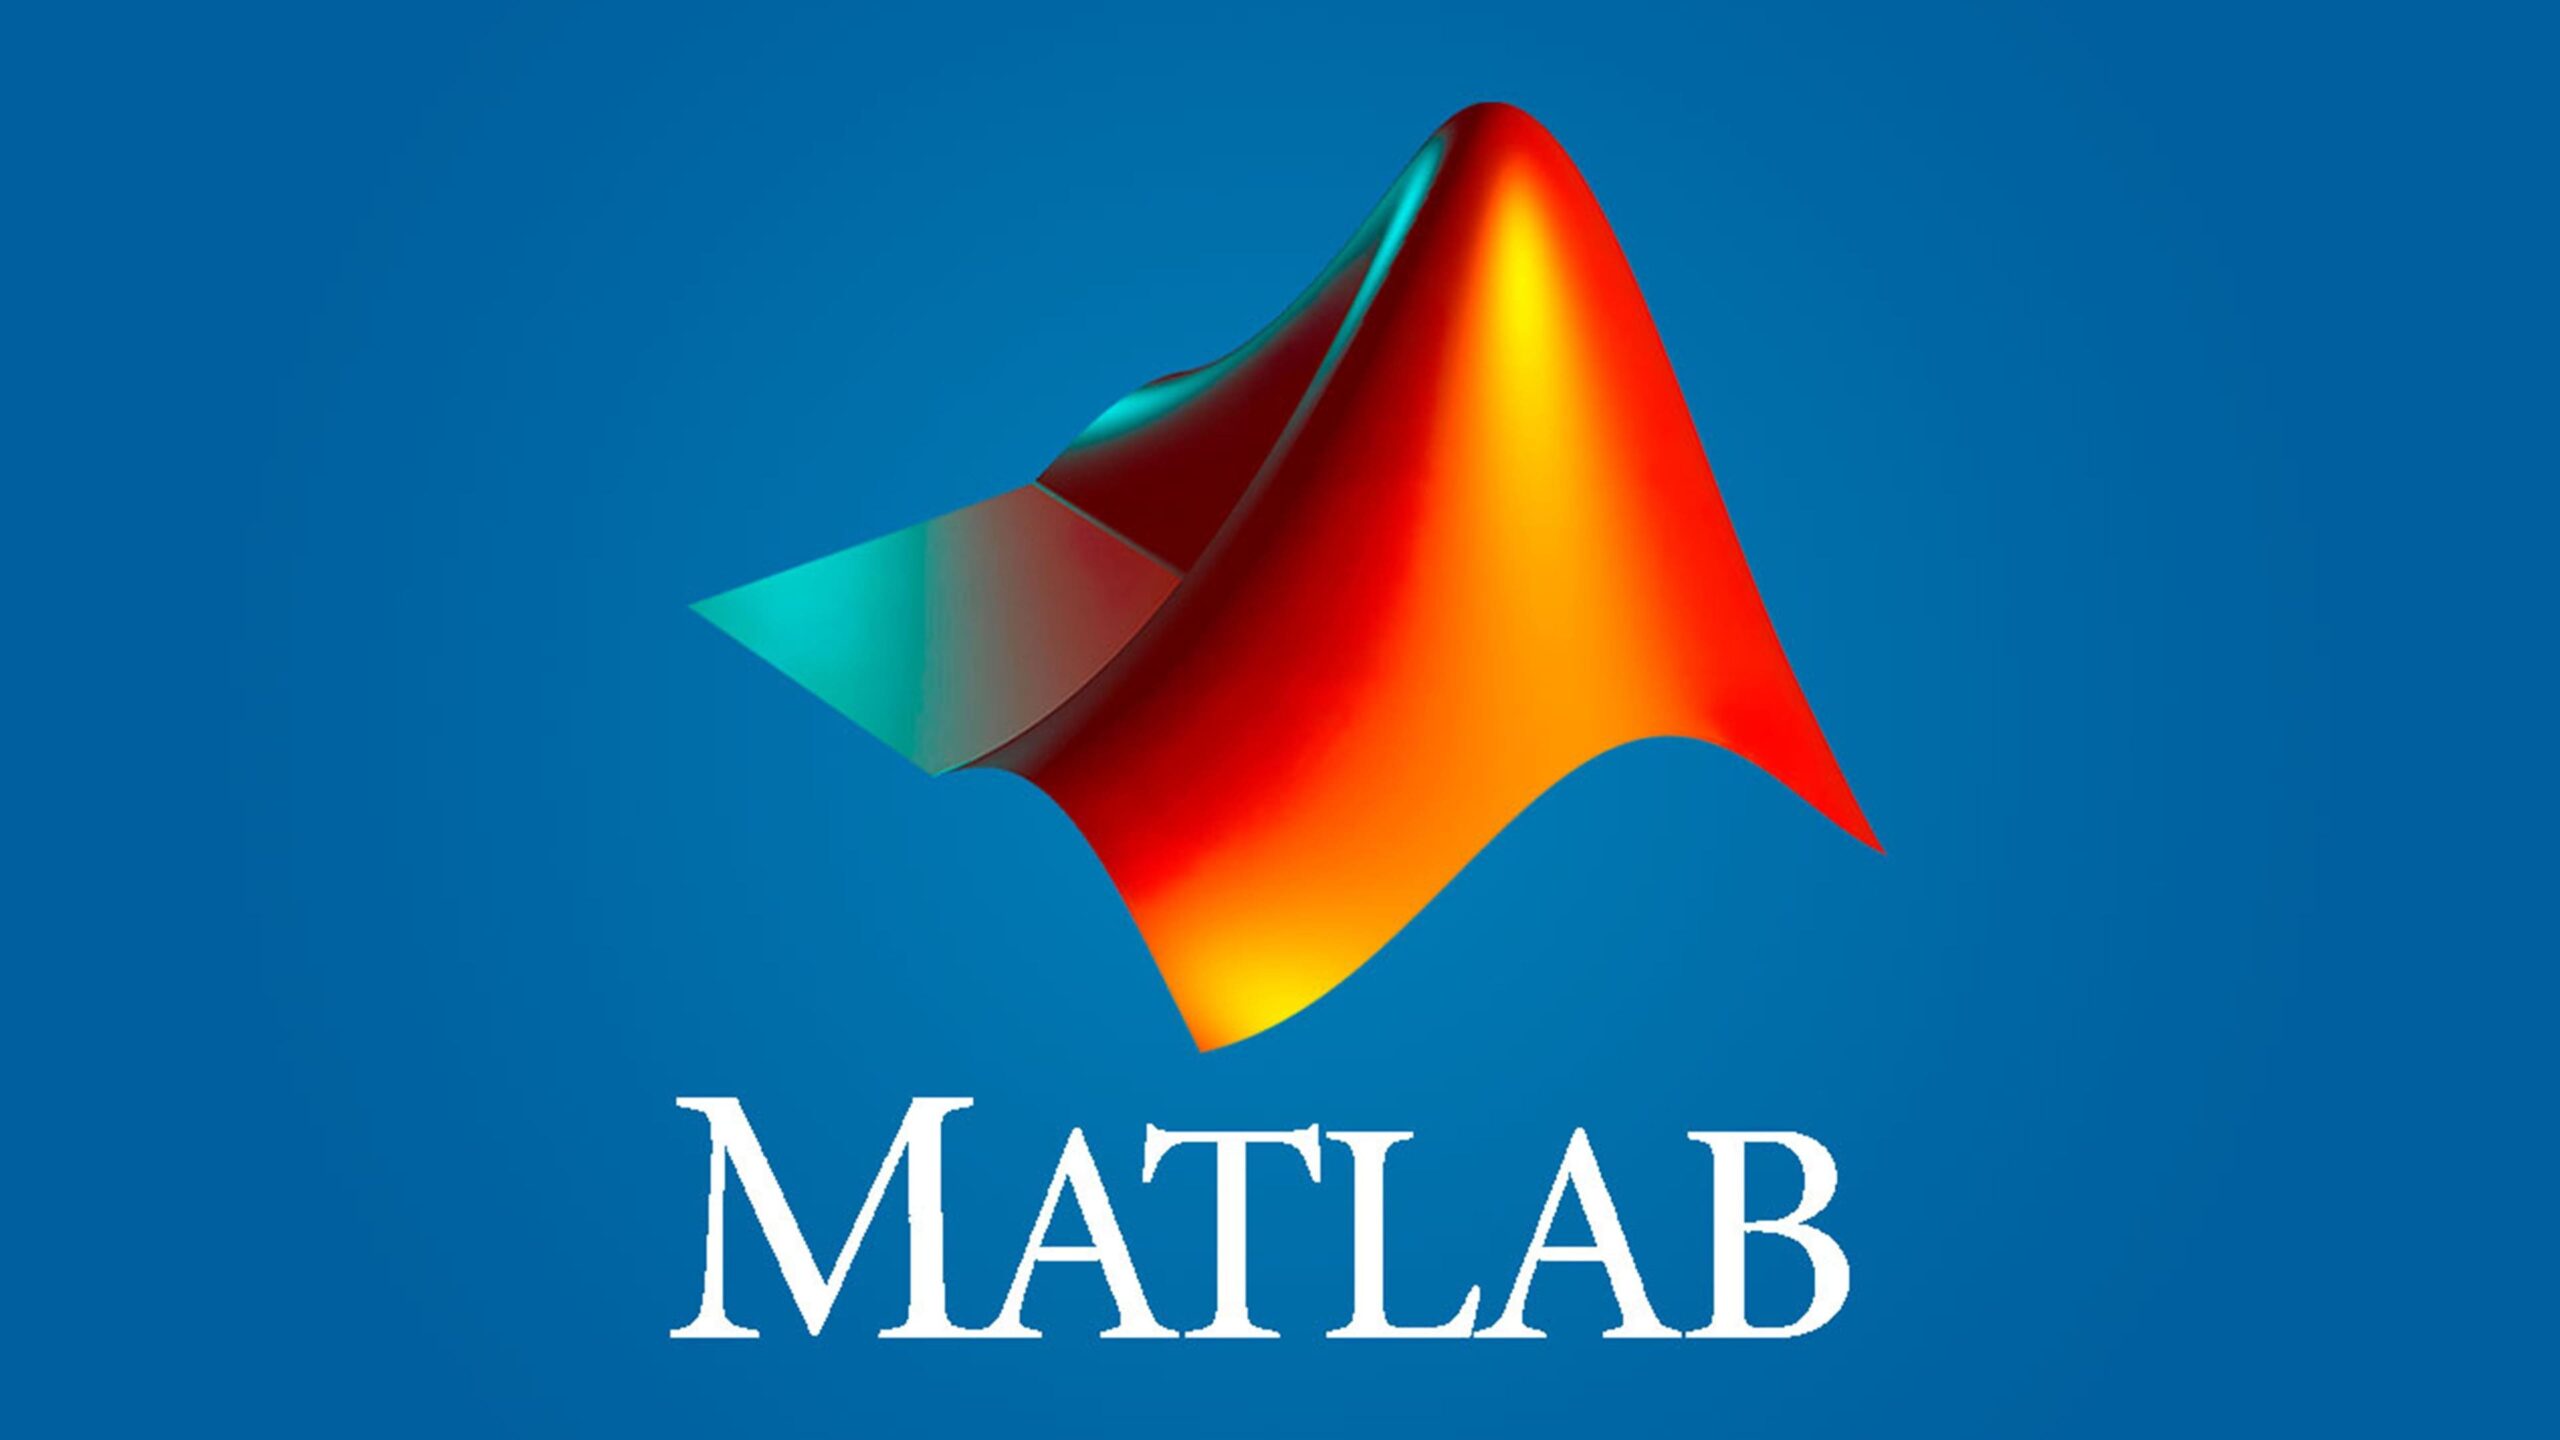 کد متلب (MatLab) الگوریتم ژنتیک برای انتخاب ویژگی بهینه در مسائل طبقه بندی